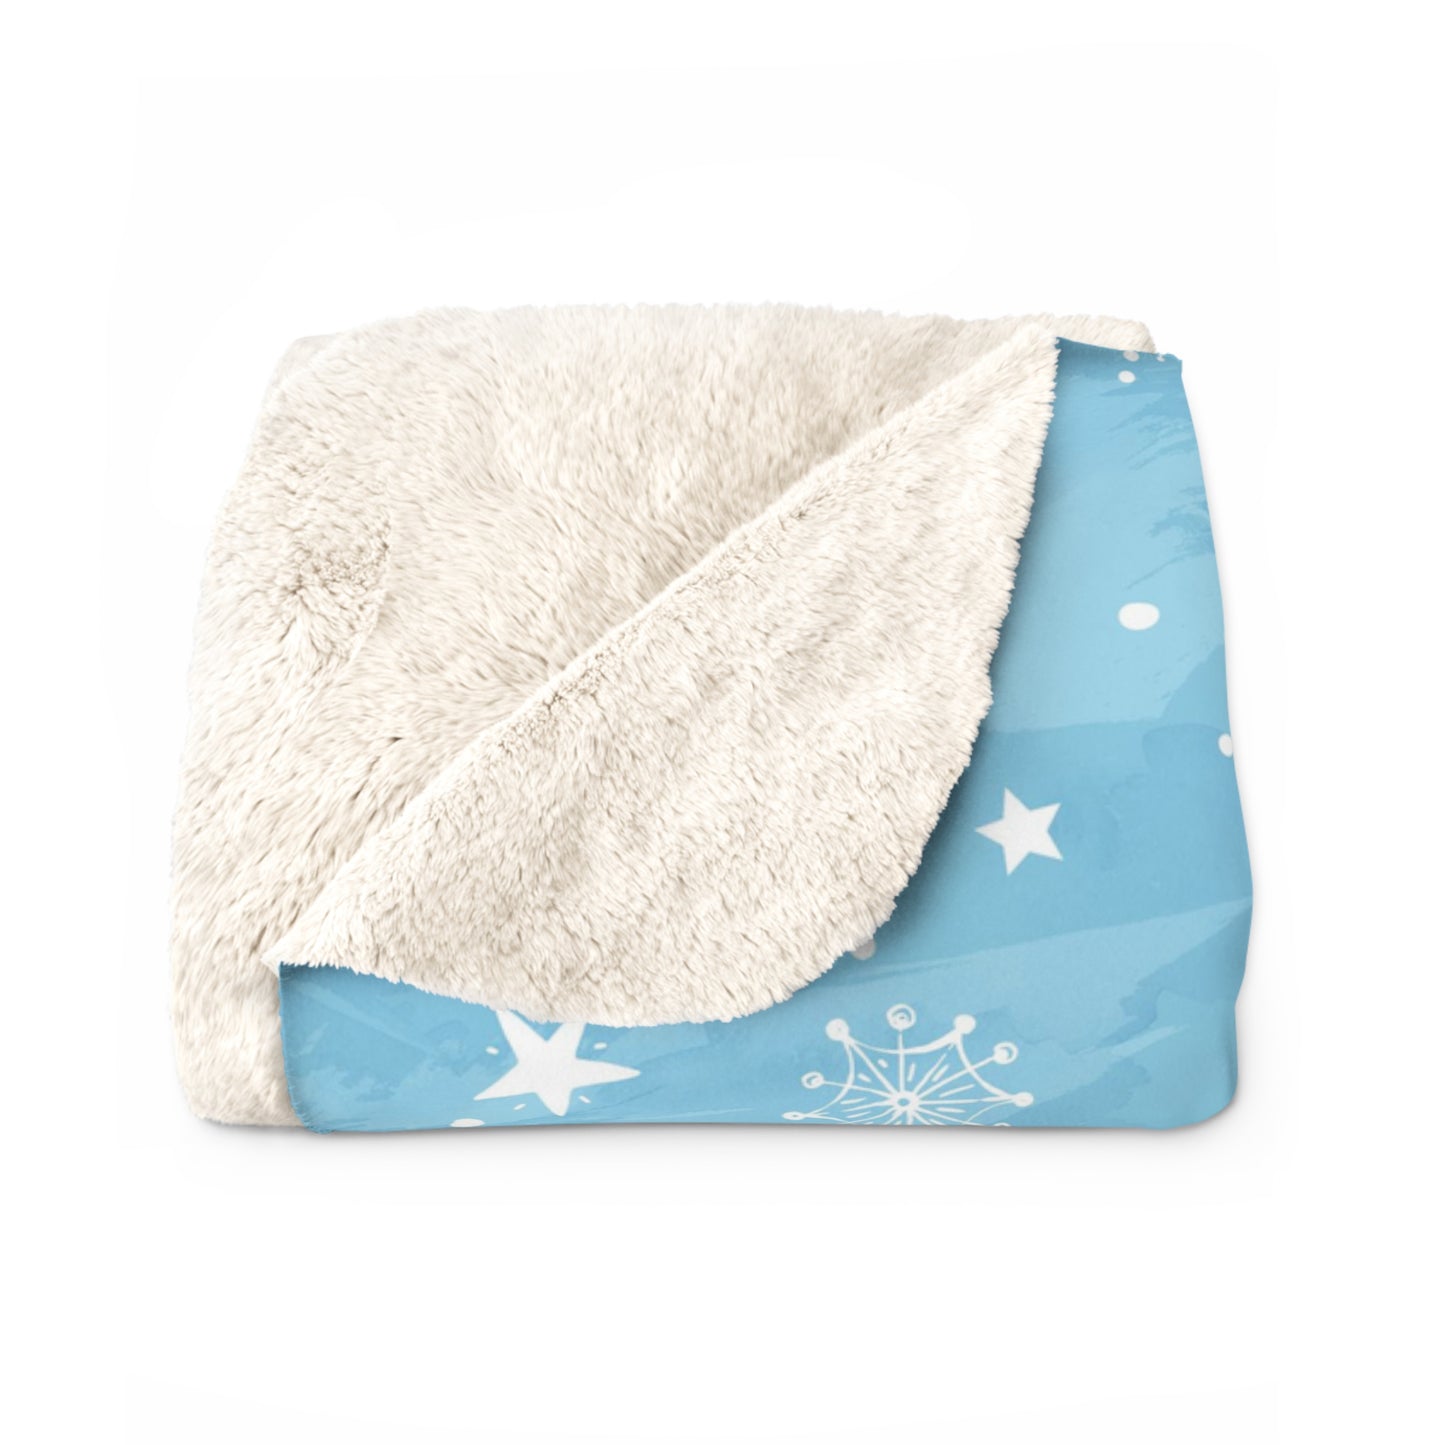 Believe - Santa hat, Elf, Reindeer, Snowflake - Funny Christmas - Sherpa Fleece Blanket